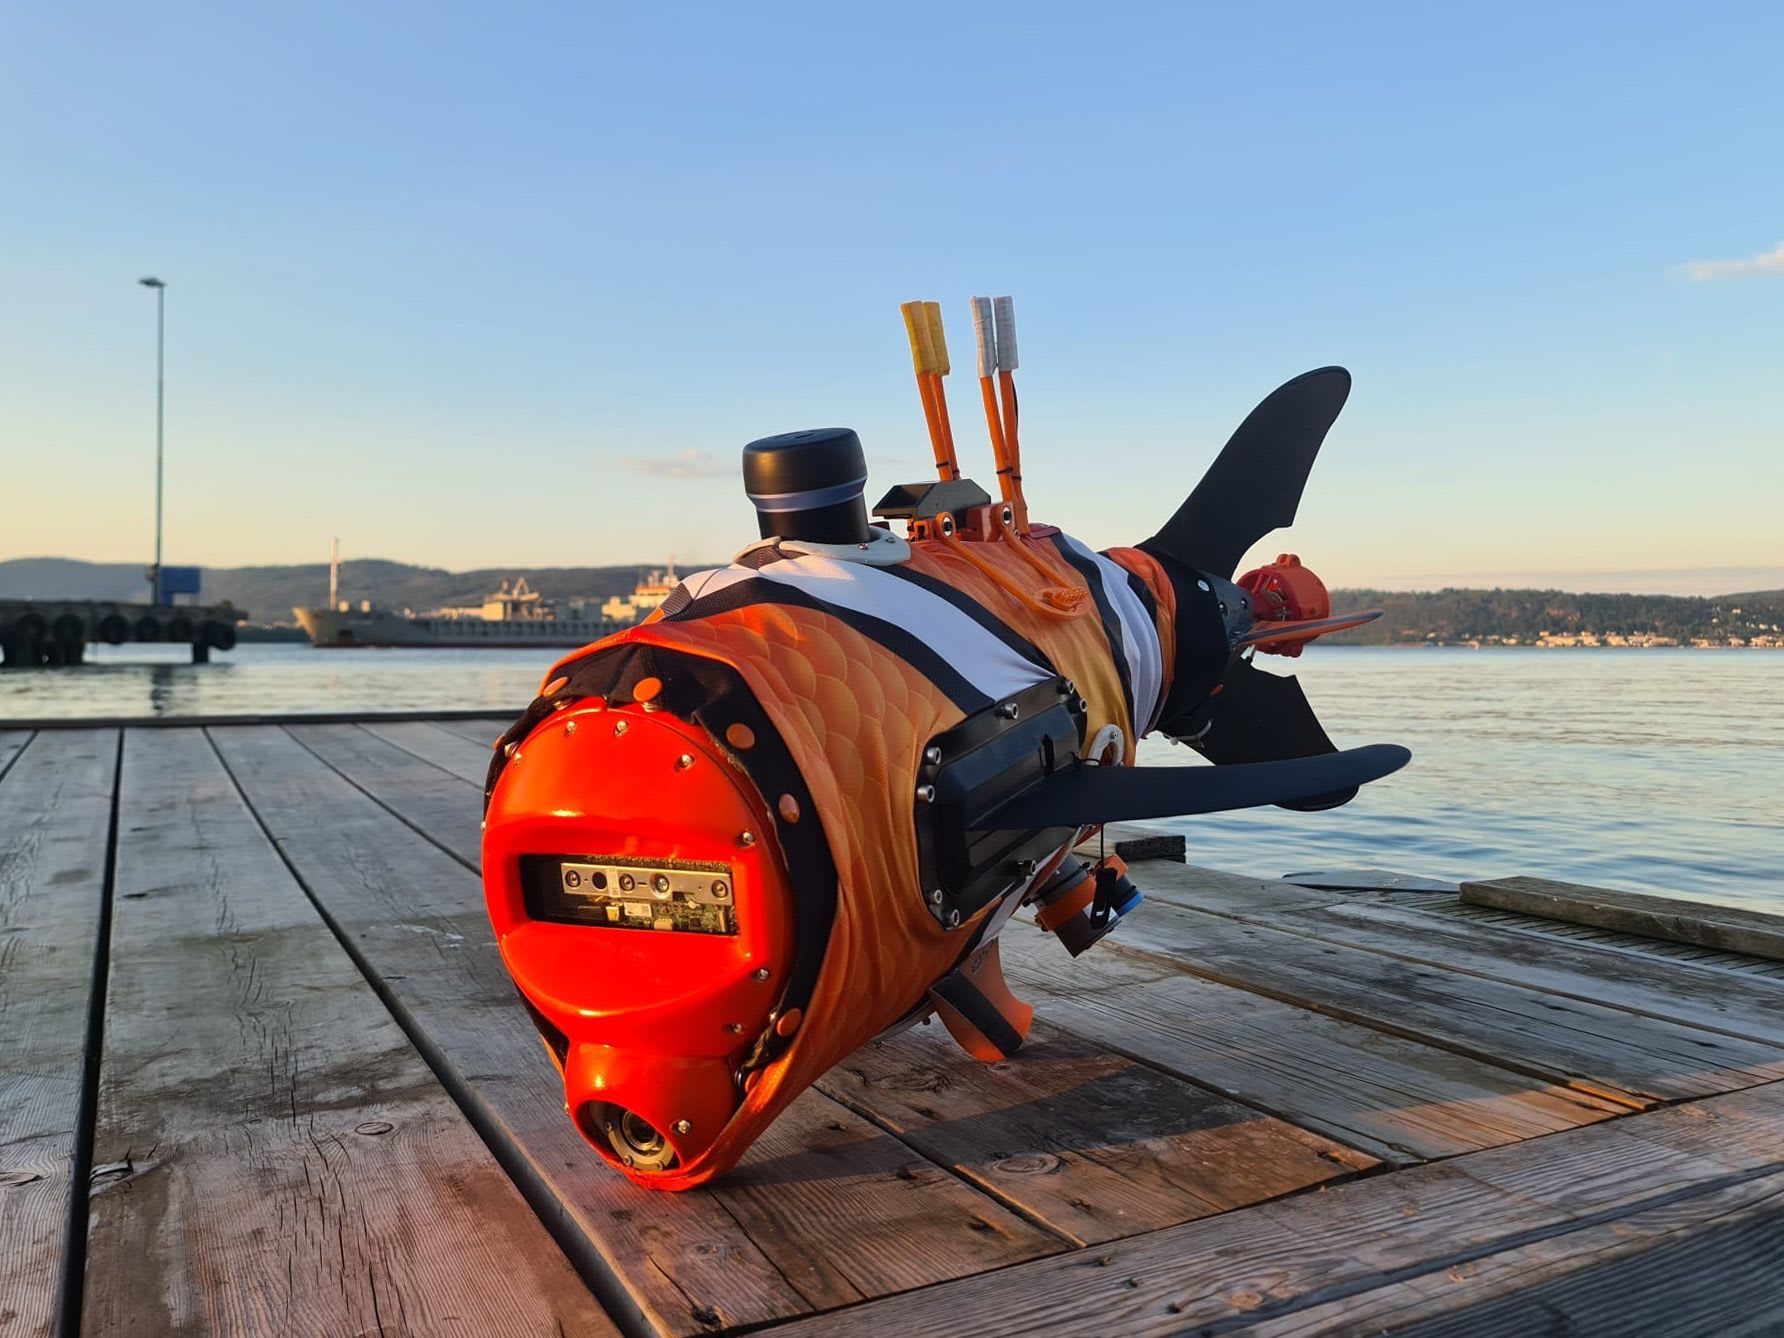 قد تجتاح روبوتات تشبه الأسماك الممرات المائية في الشرق الأوسط